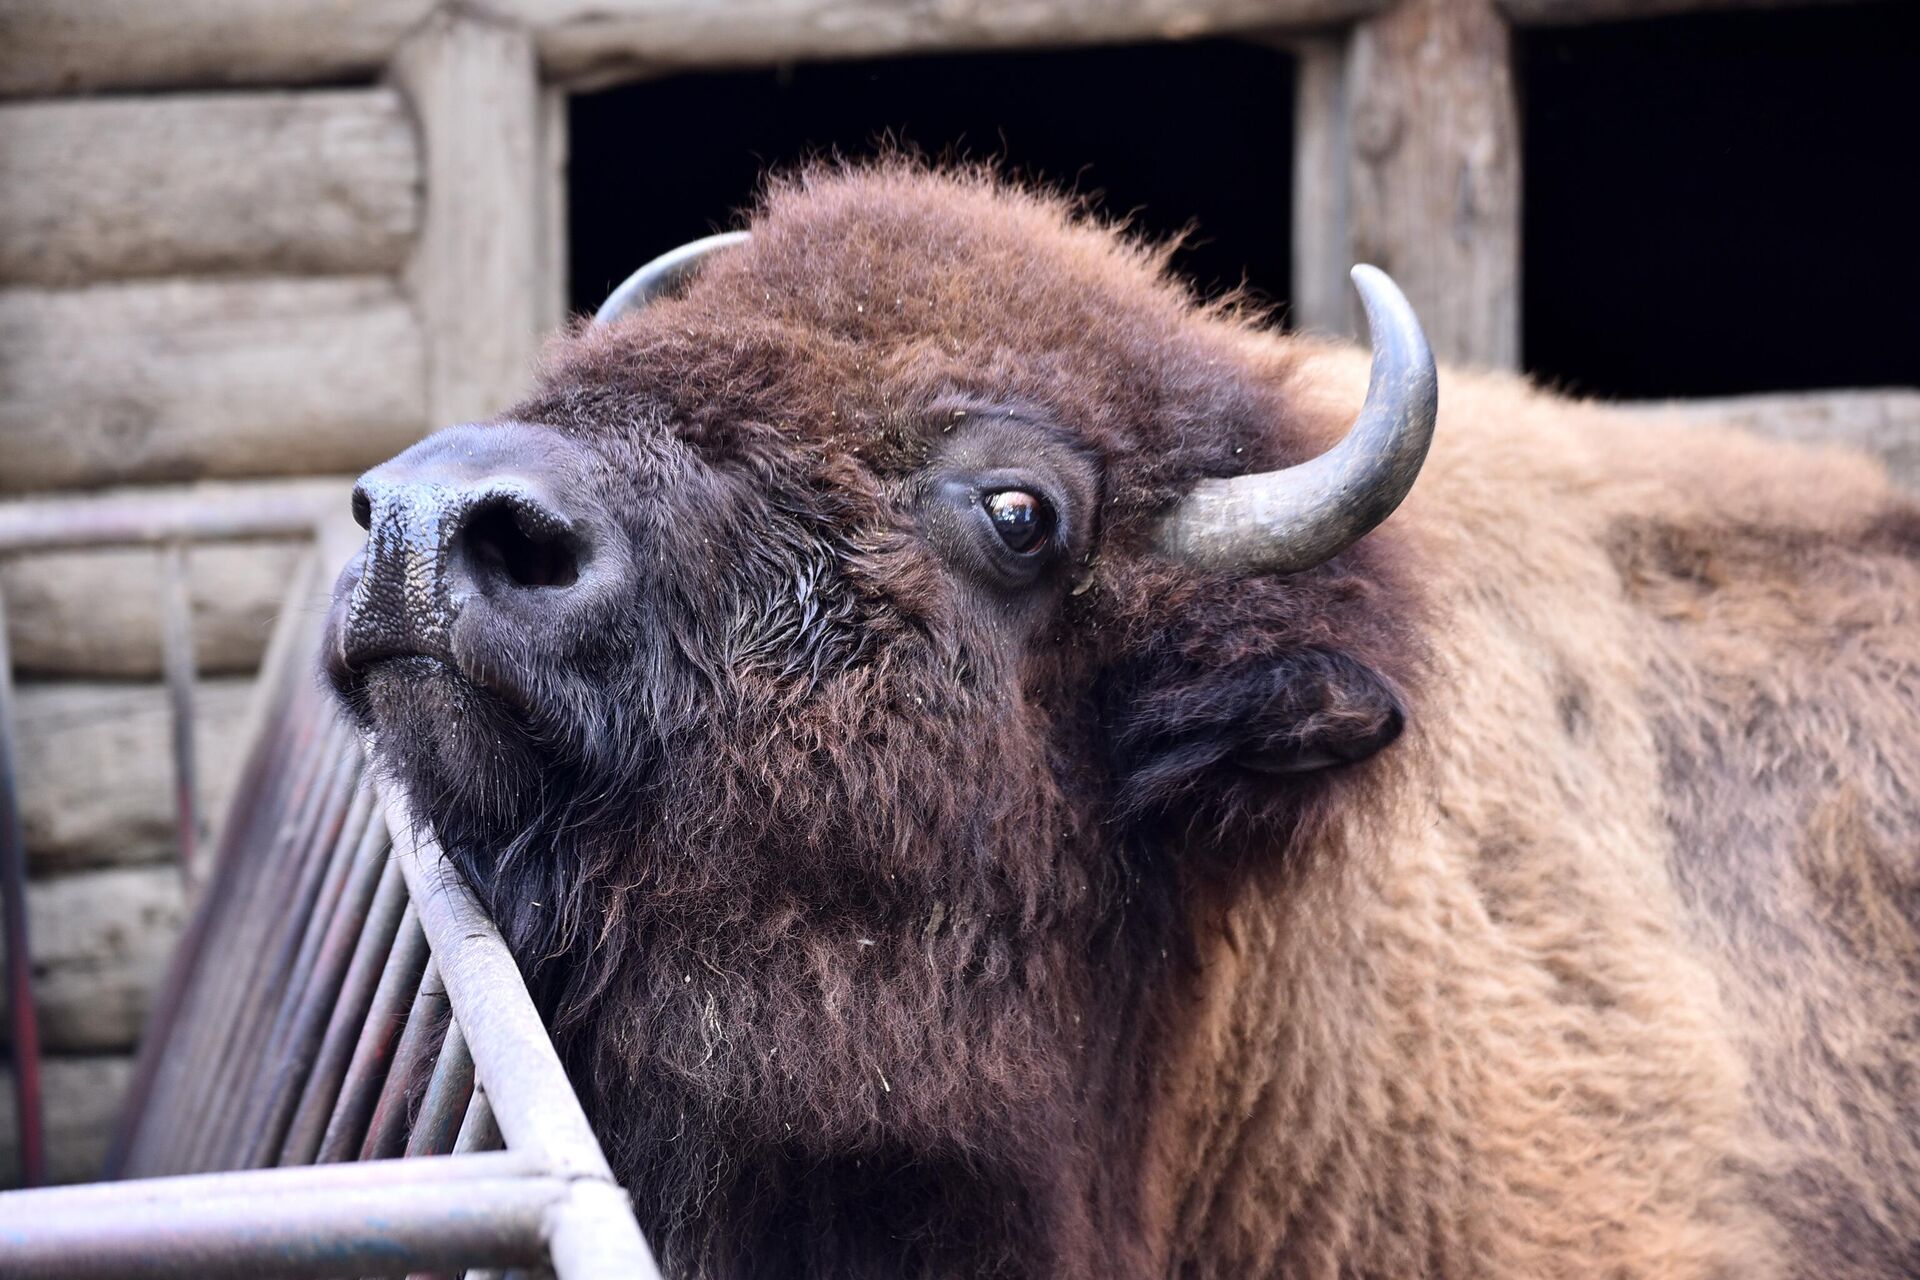 U prkos robusnoj građi, bizoni nisu agresivne životinje. Ako im priđete sa grozdom trave, oni će je voljno pojesti direktno iz vaših ruku. - Sputnik Srbija, 1920, 22.09.2022